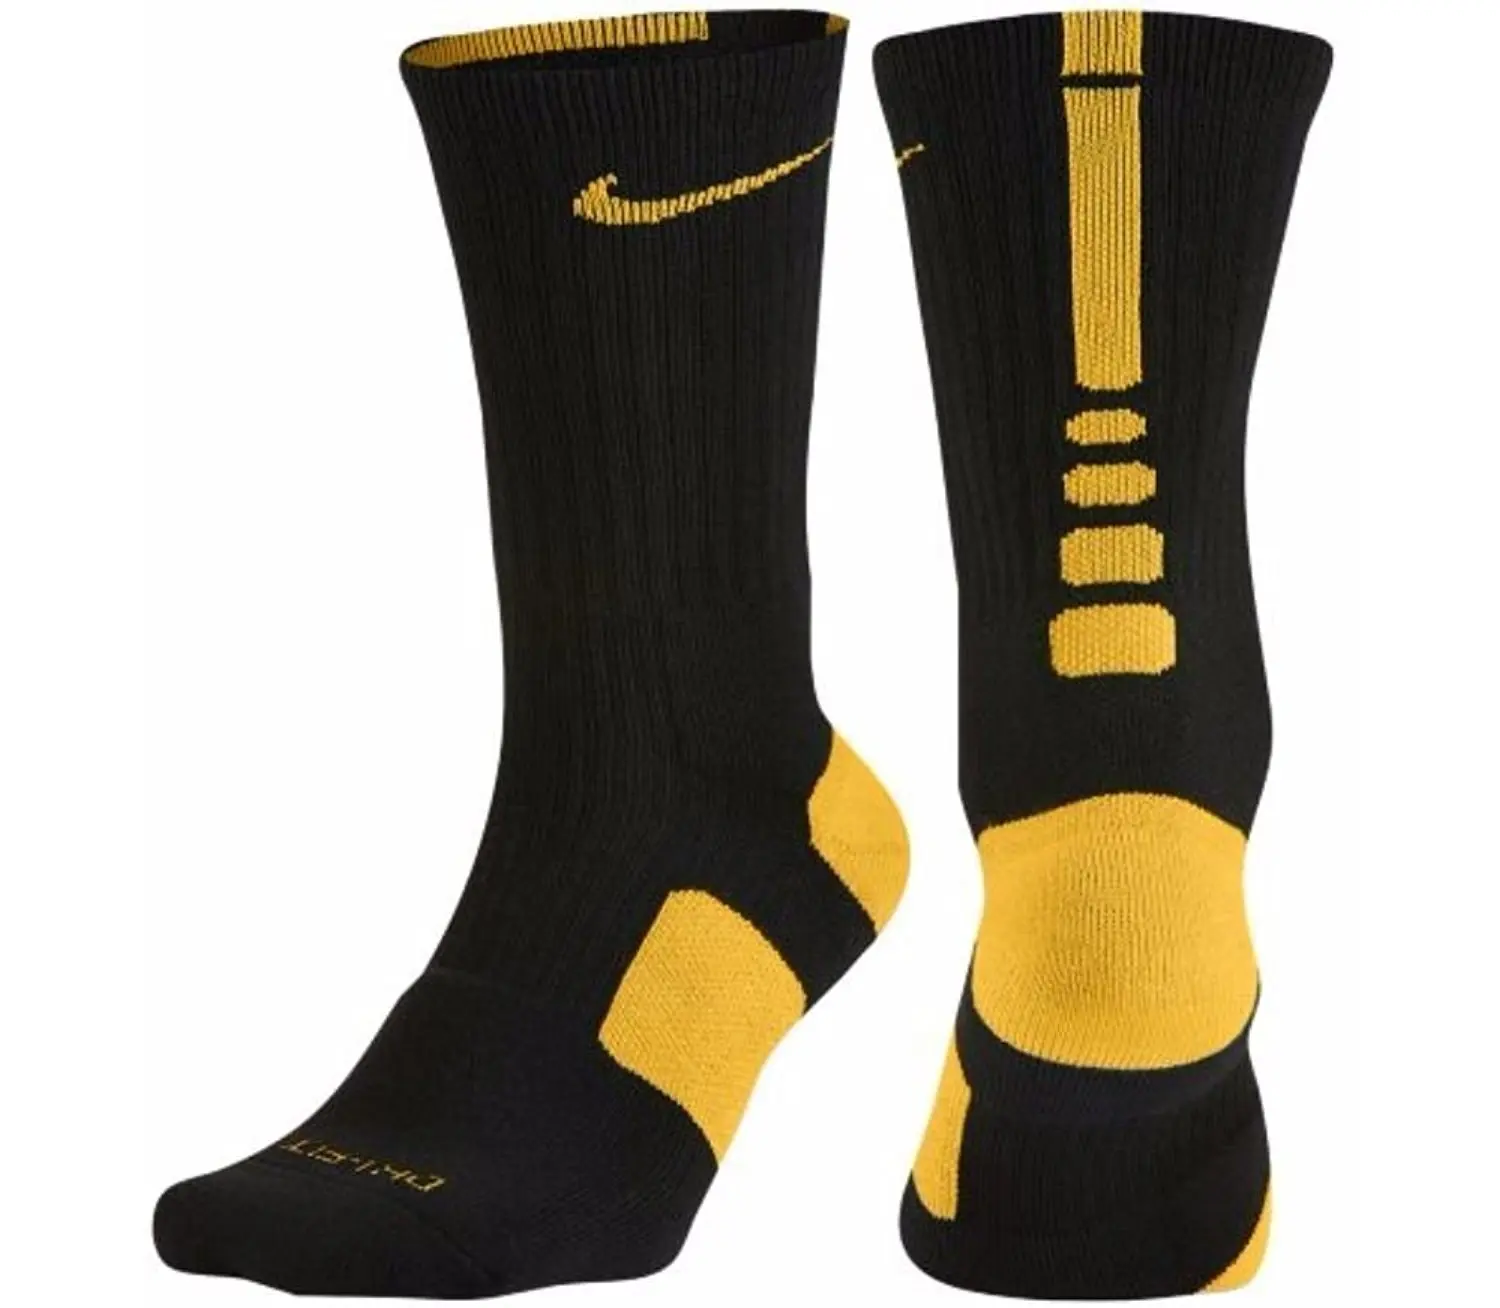 nike elite socks medium